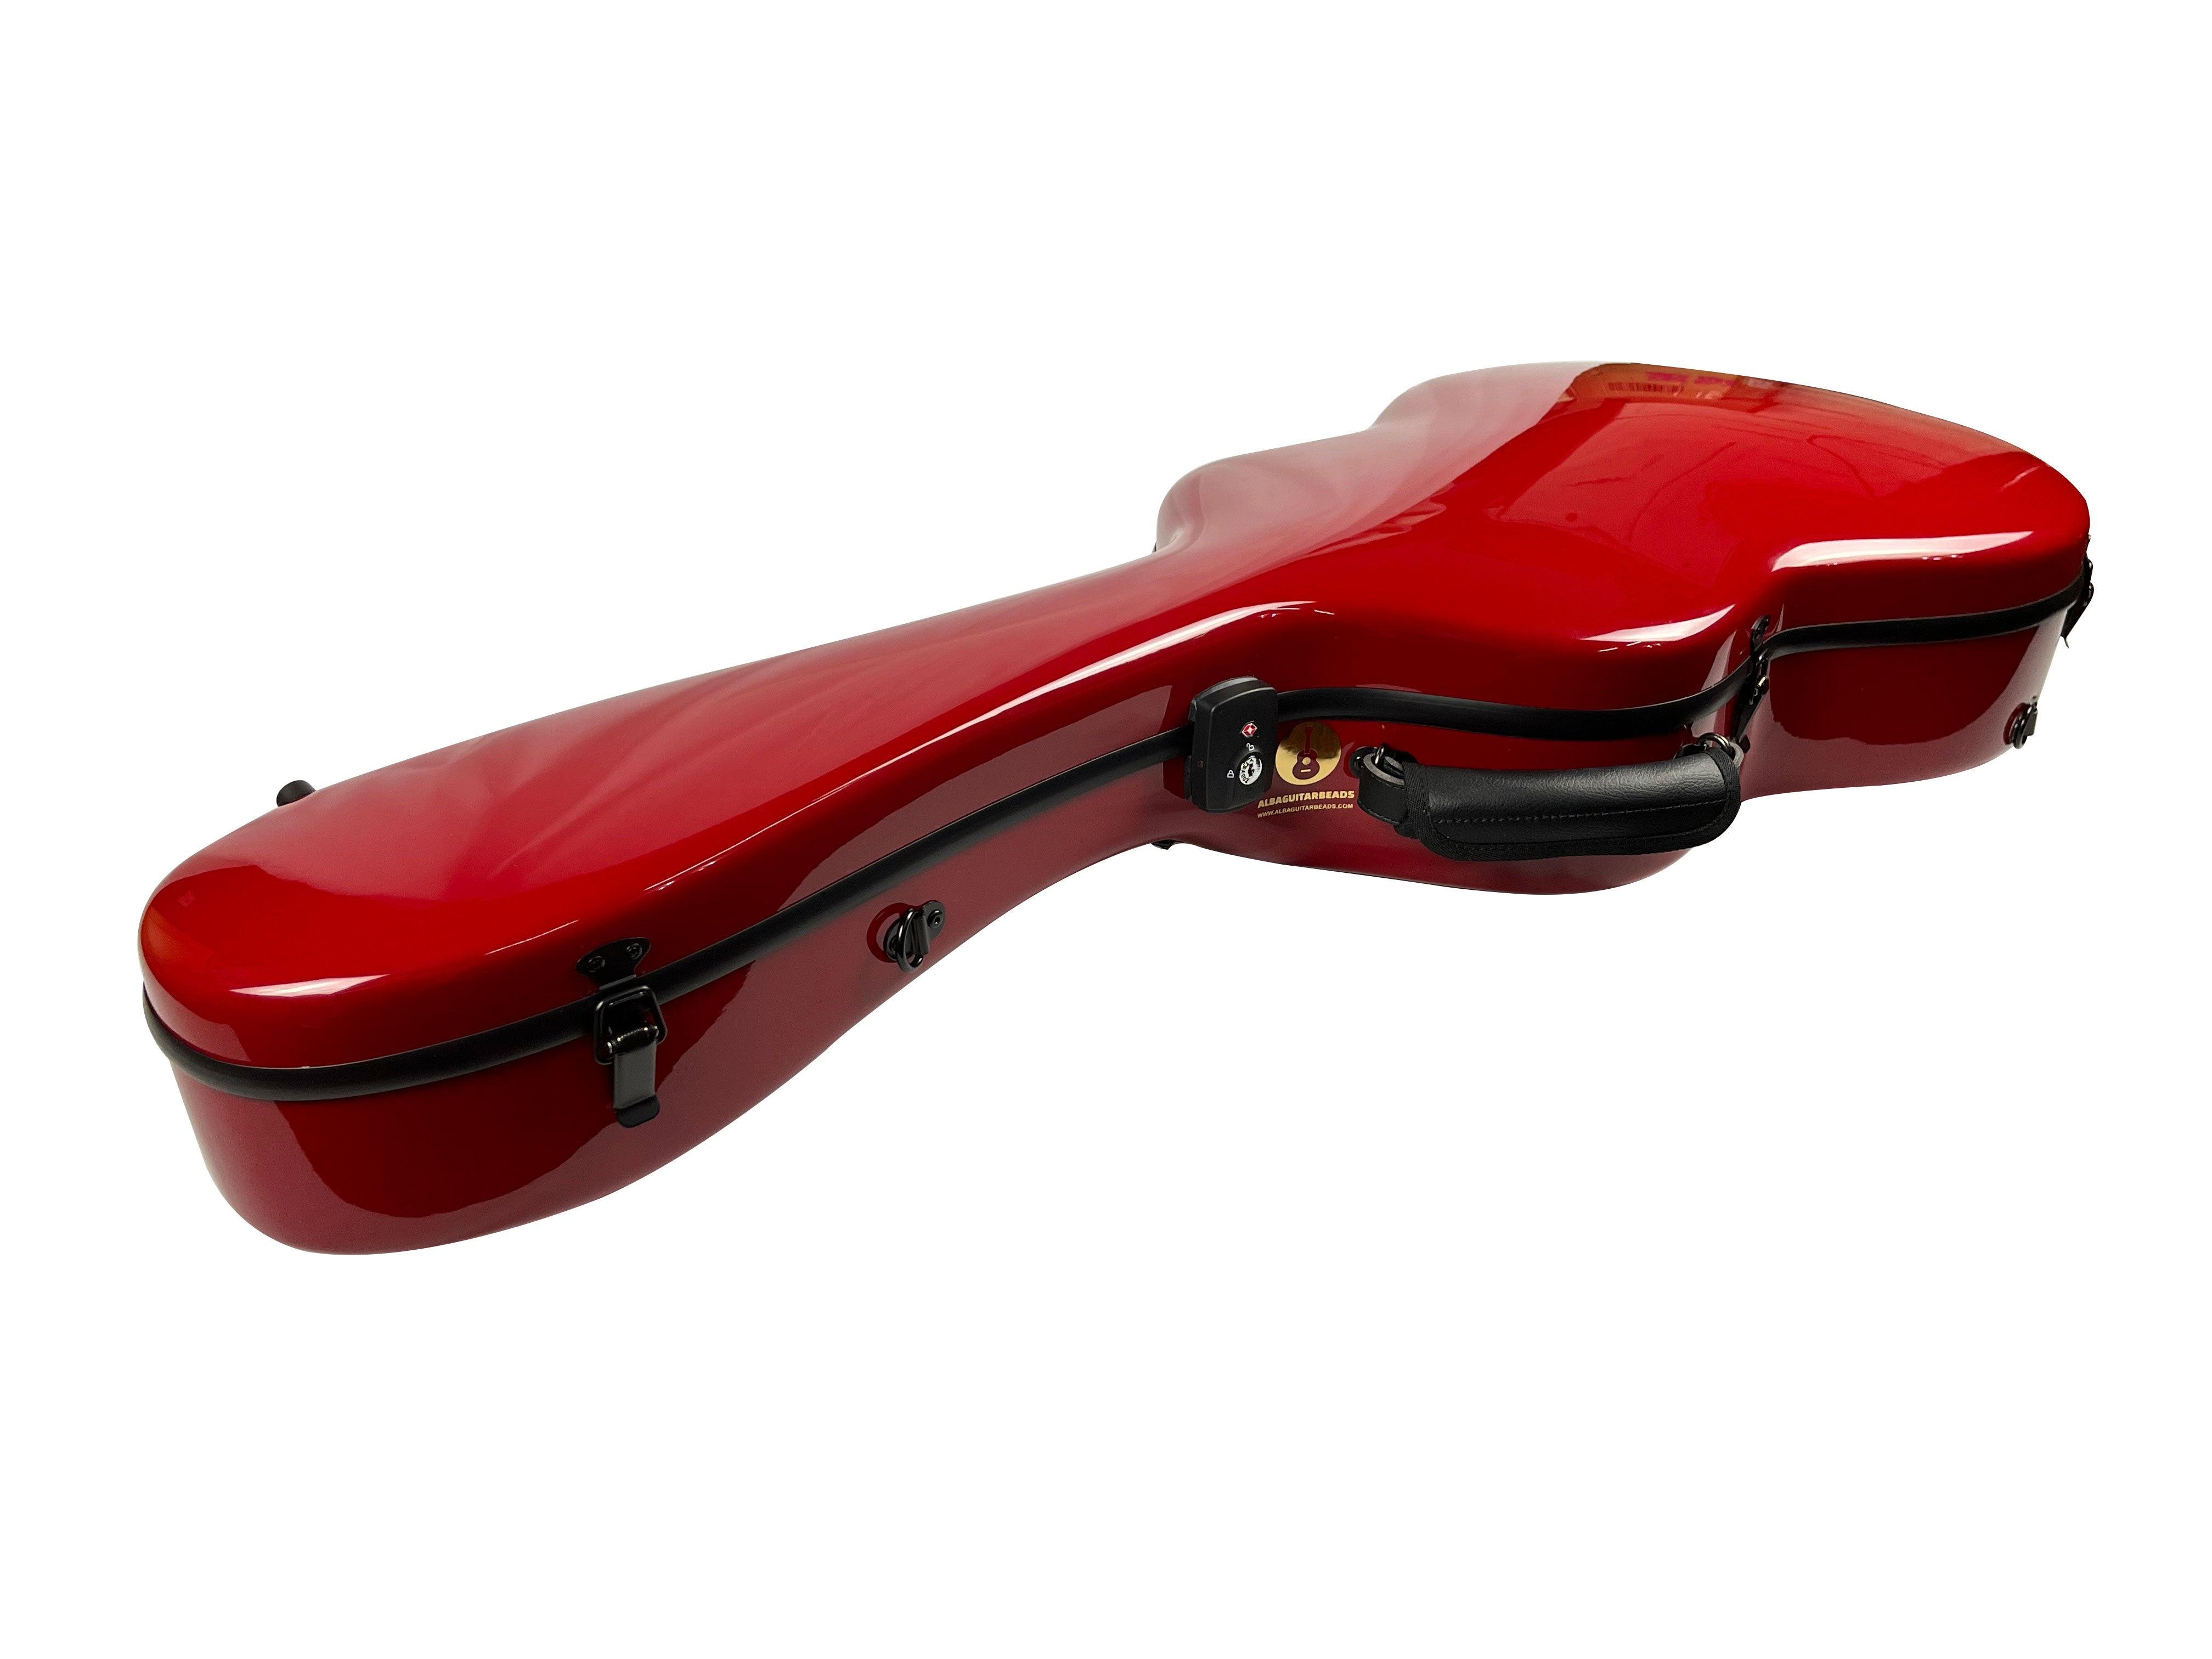 Carbon Case for Classical Guitar Acoustic, Flamenco guitar, Red Gloss - mackazie